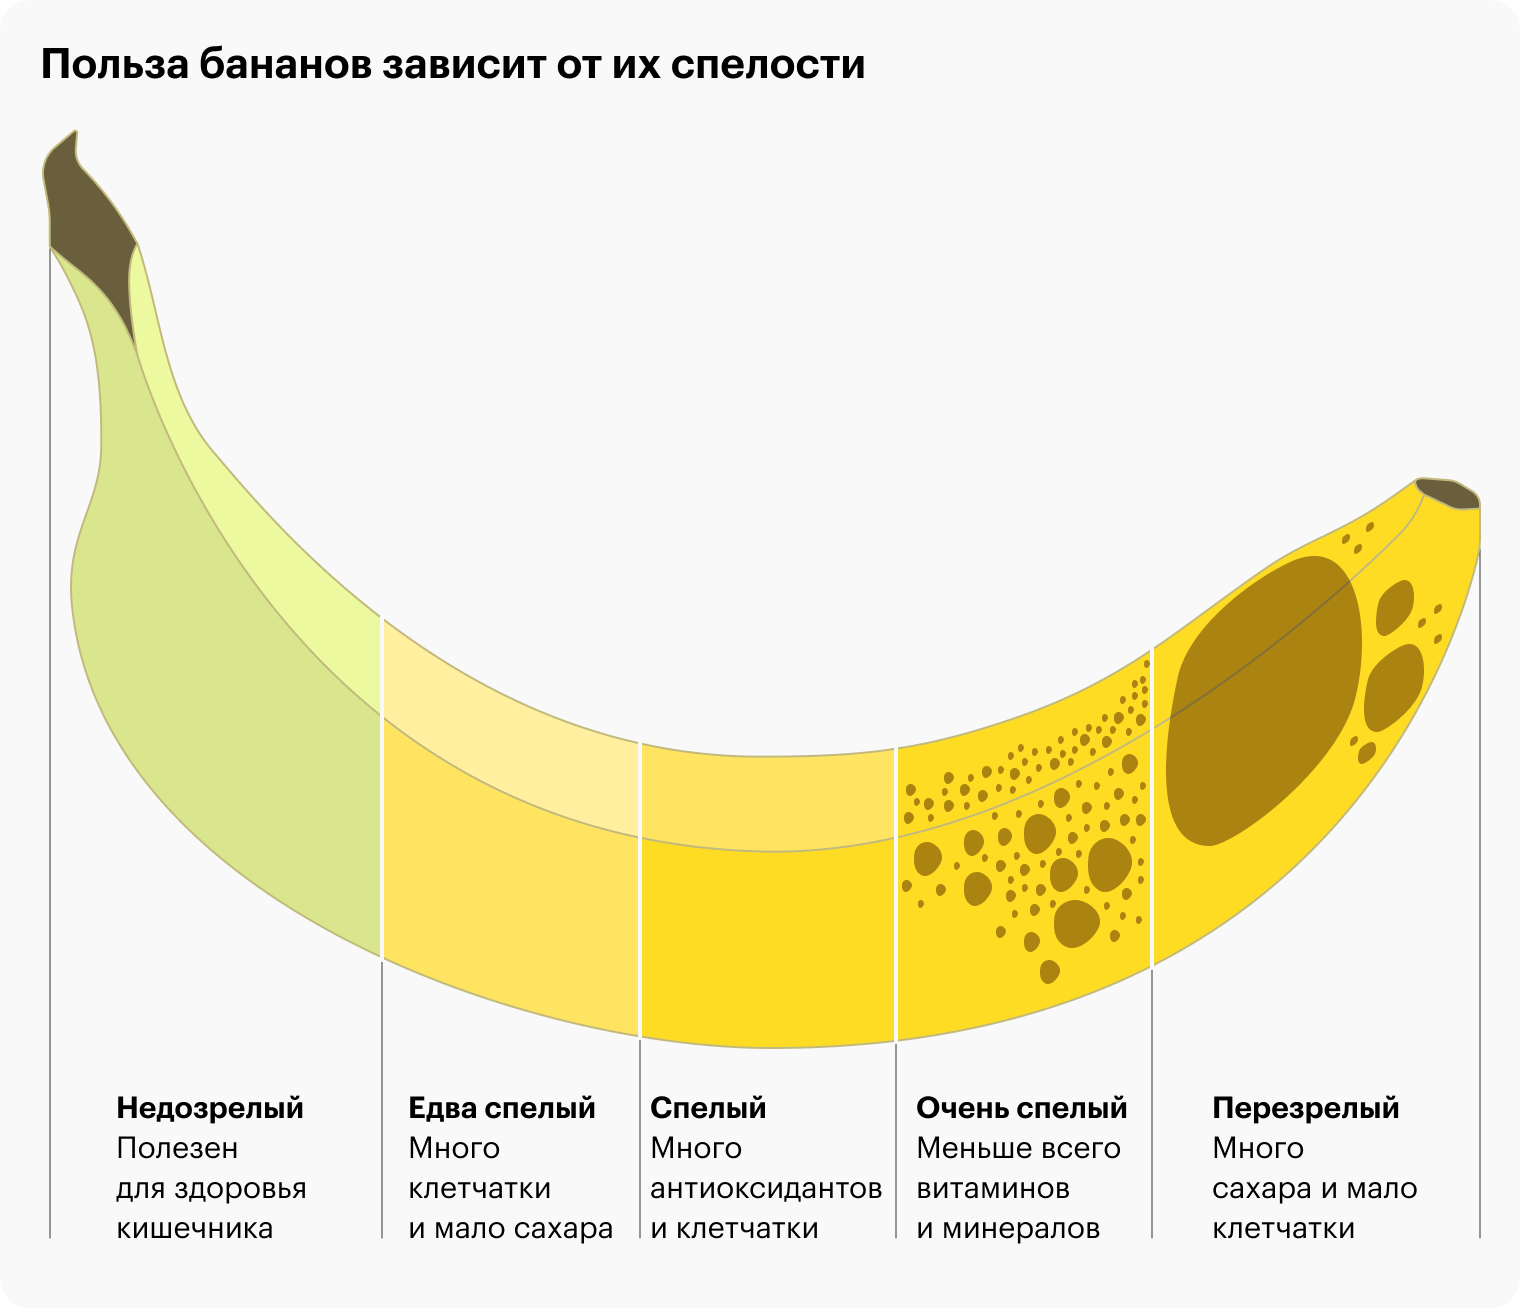 Зеленые бананы полезнее, но спелые нравятся на вкус куда большему числу людей